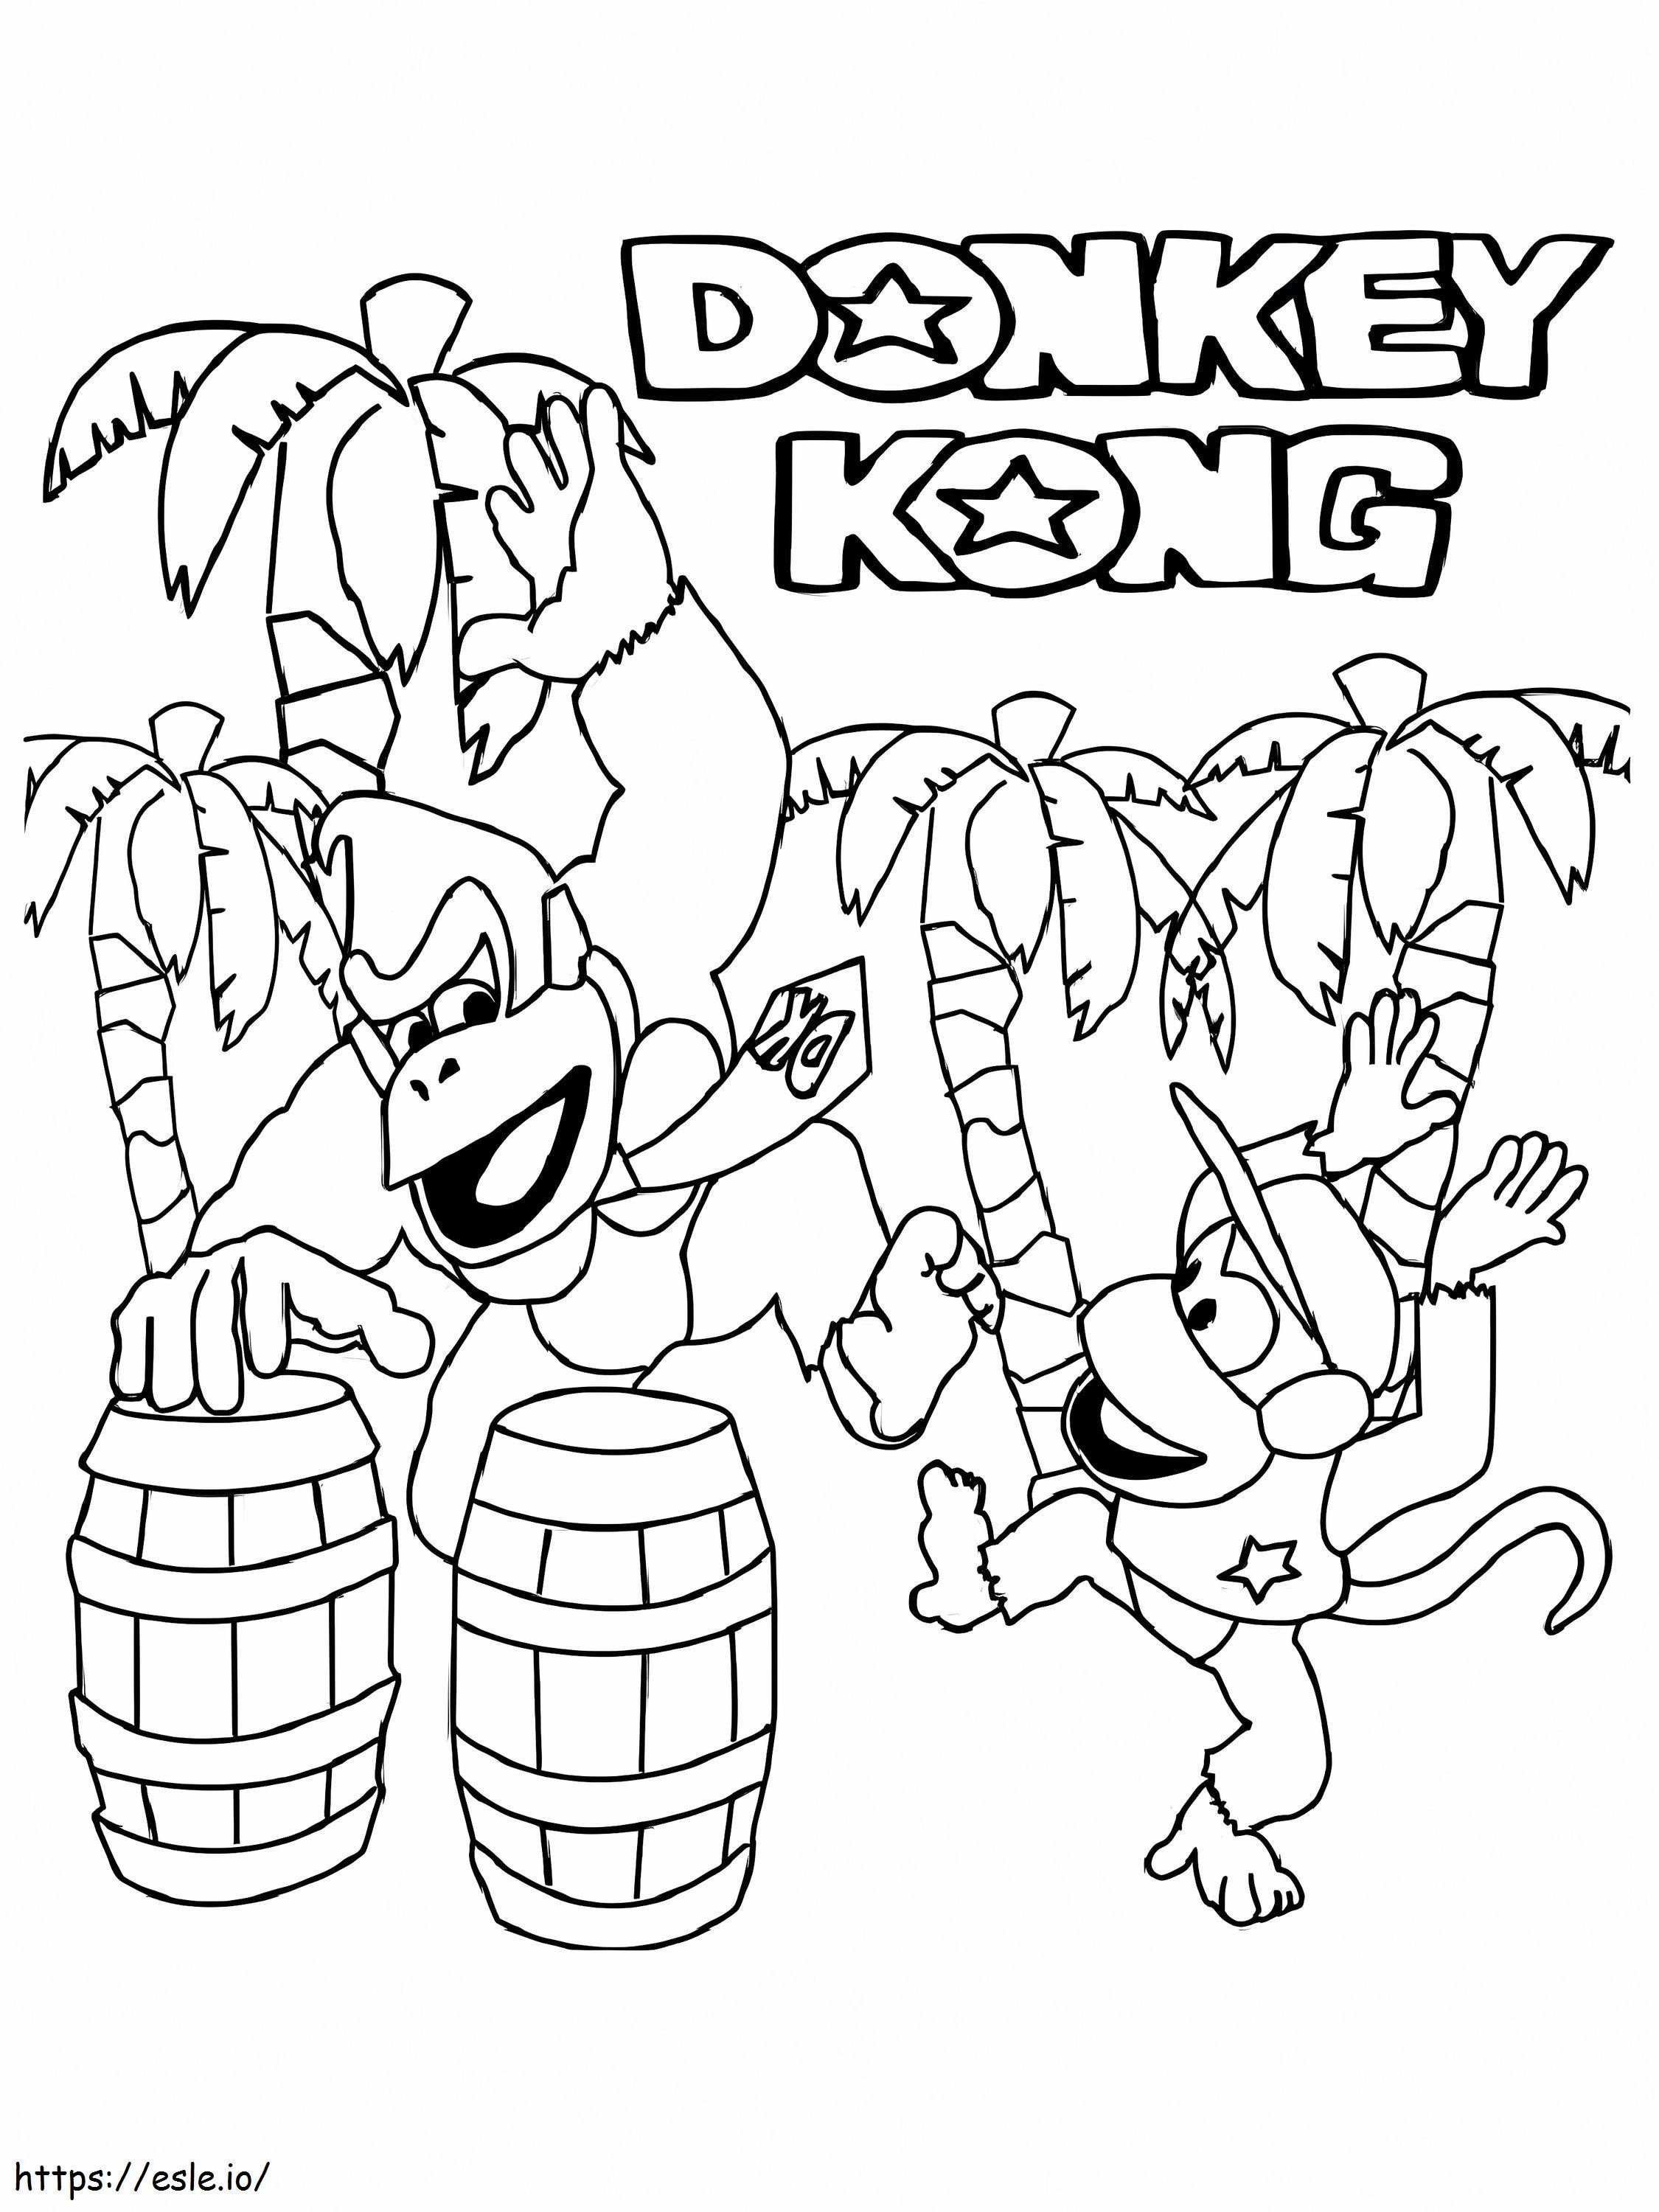 Donkey Kong ve Diddy Kong Bailando boyama